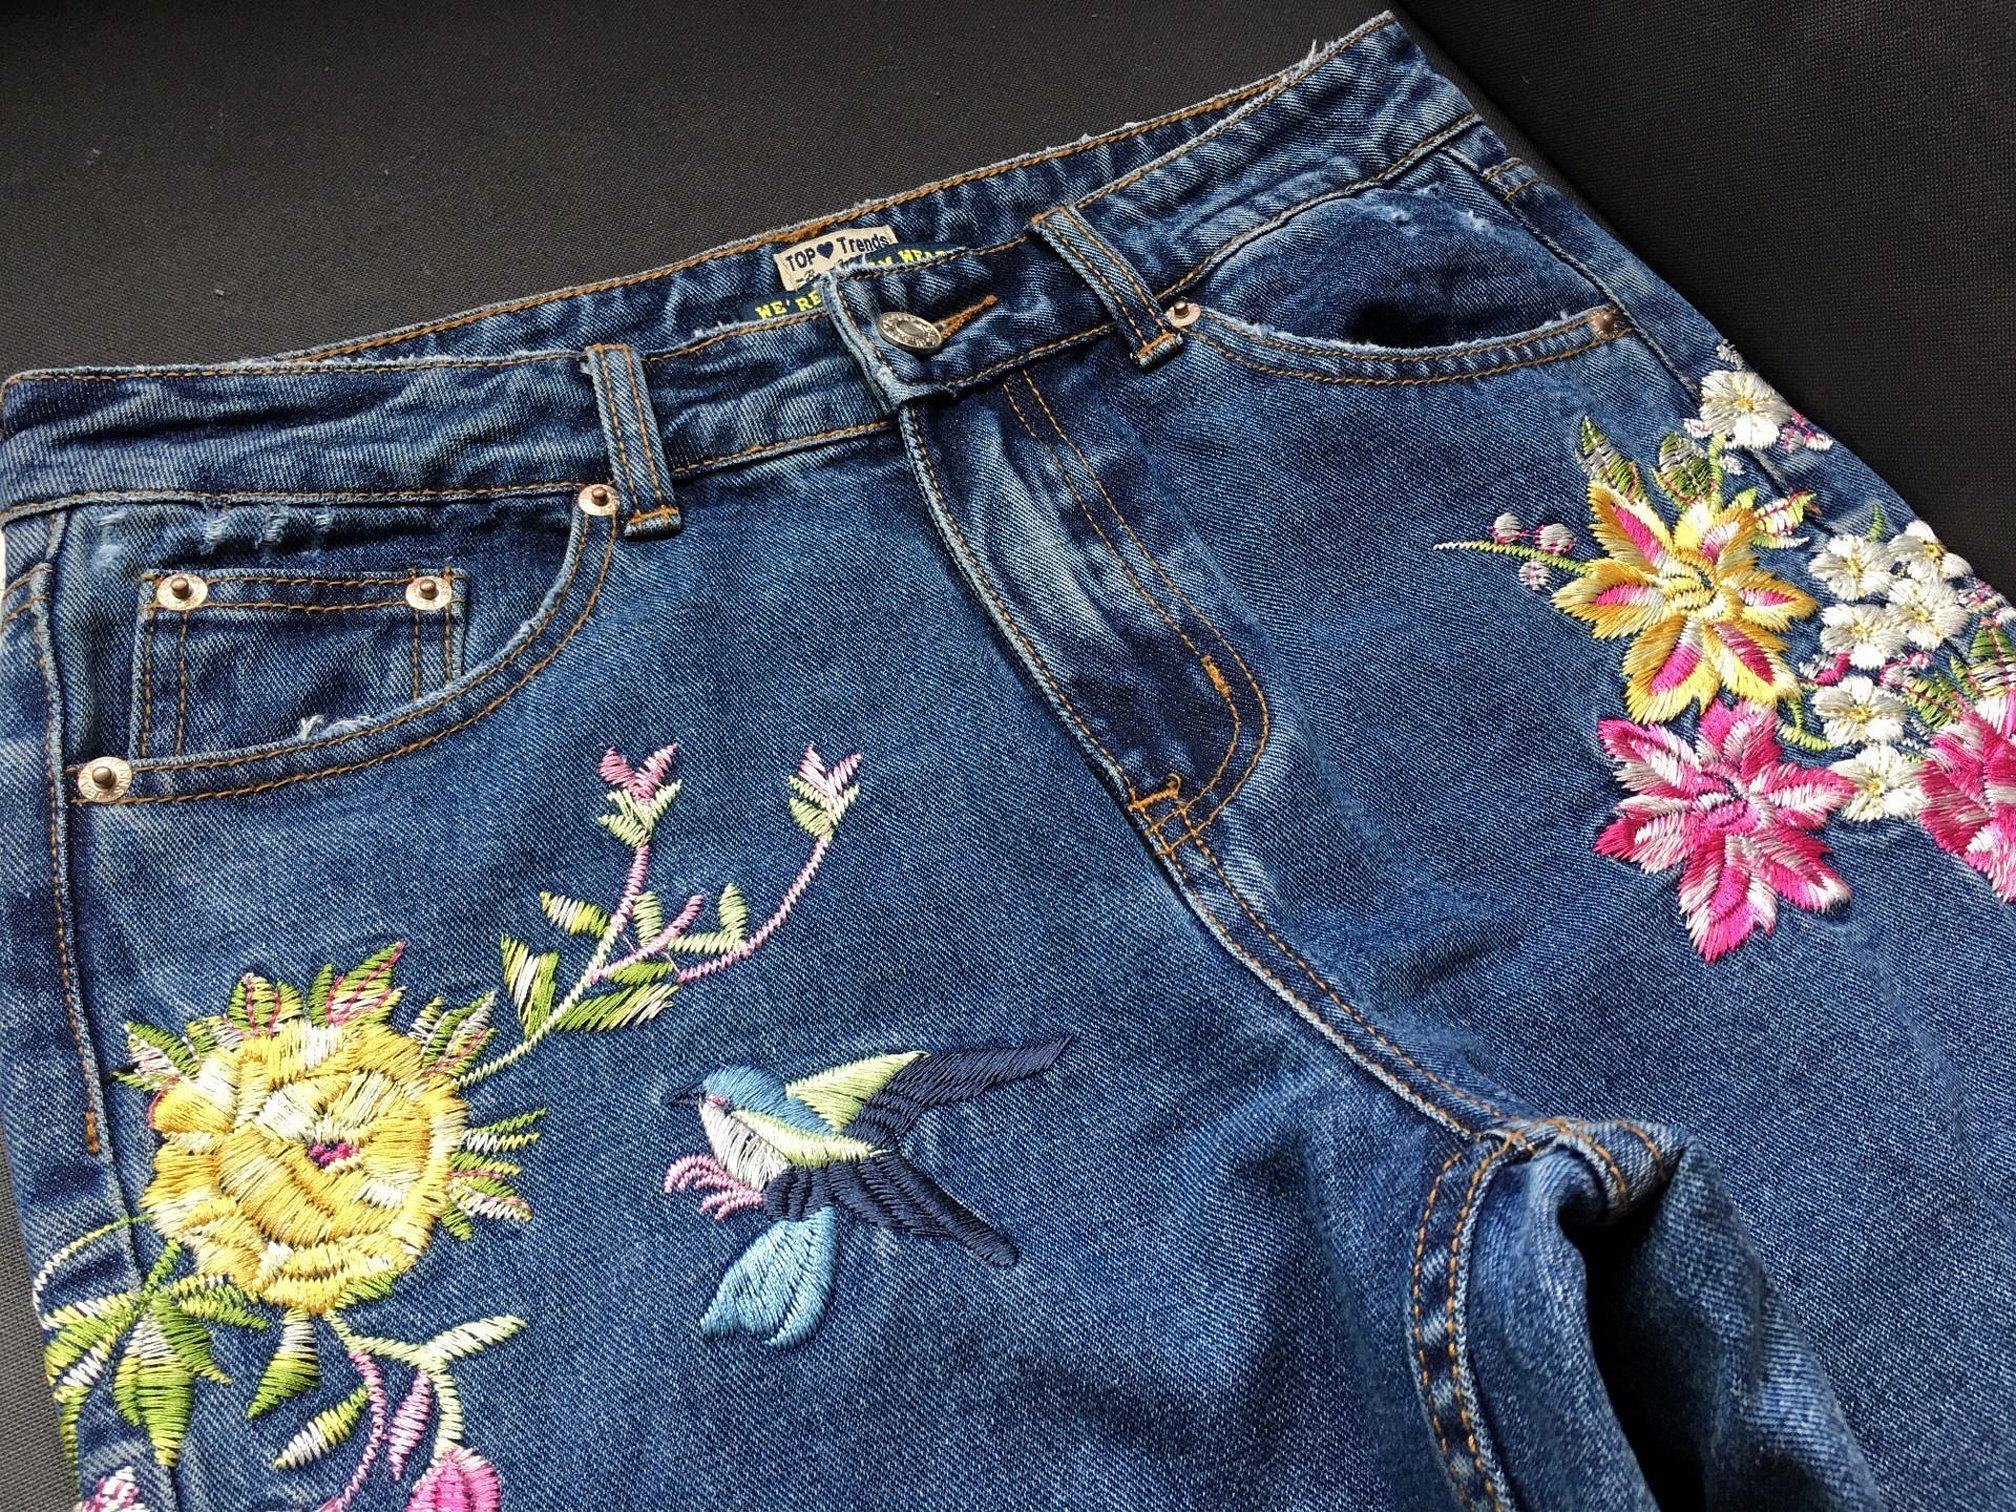 Цветы на одежде вышивка на джинсе